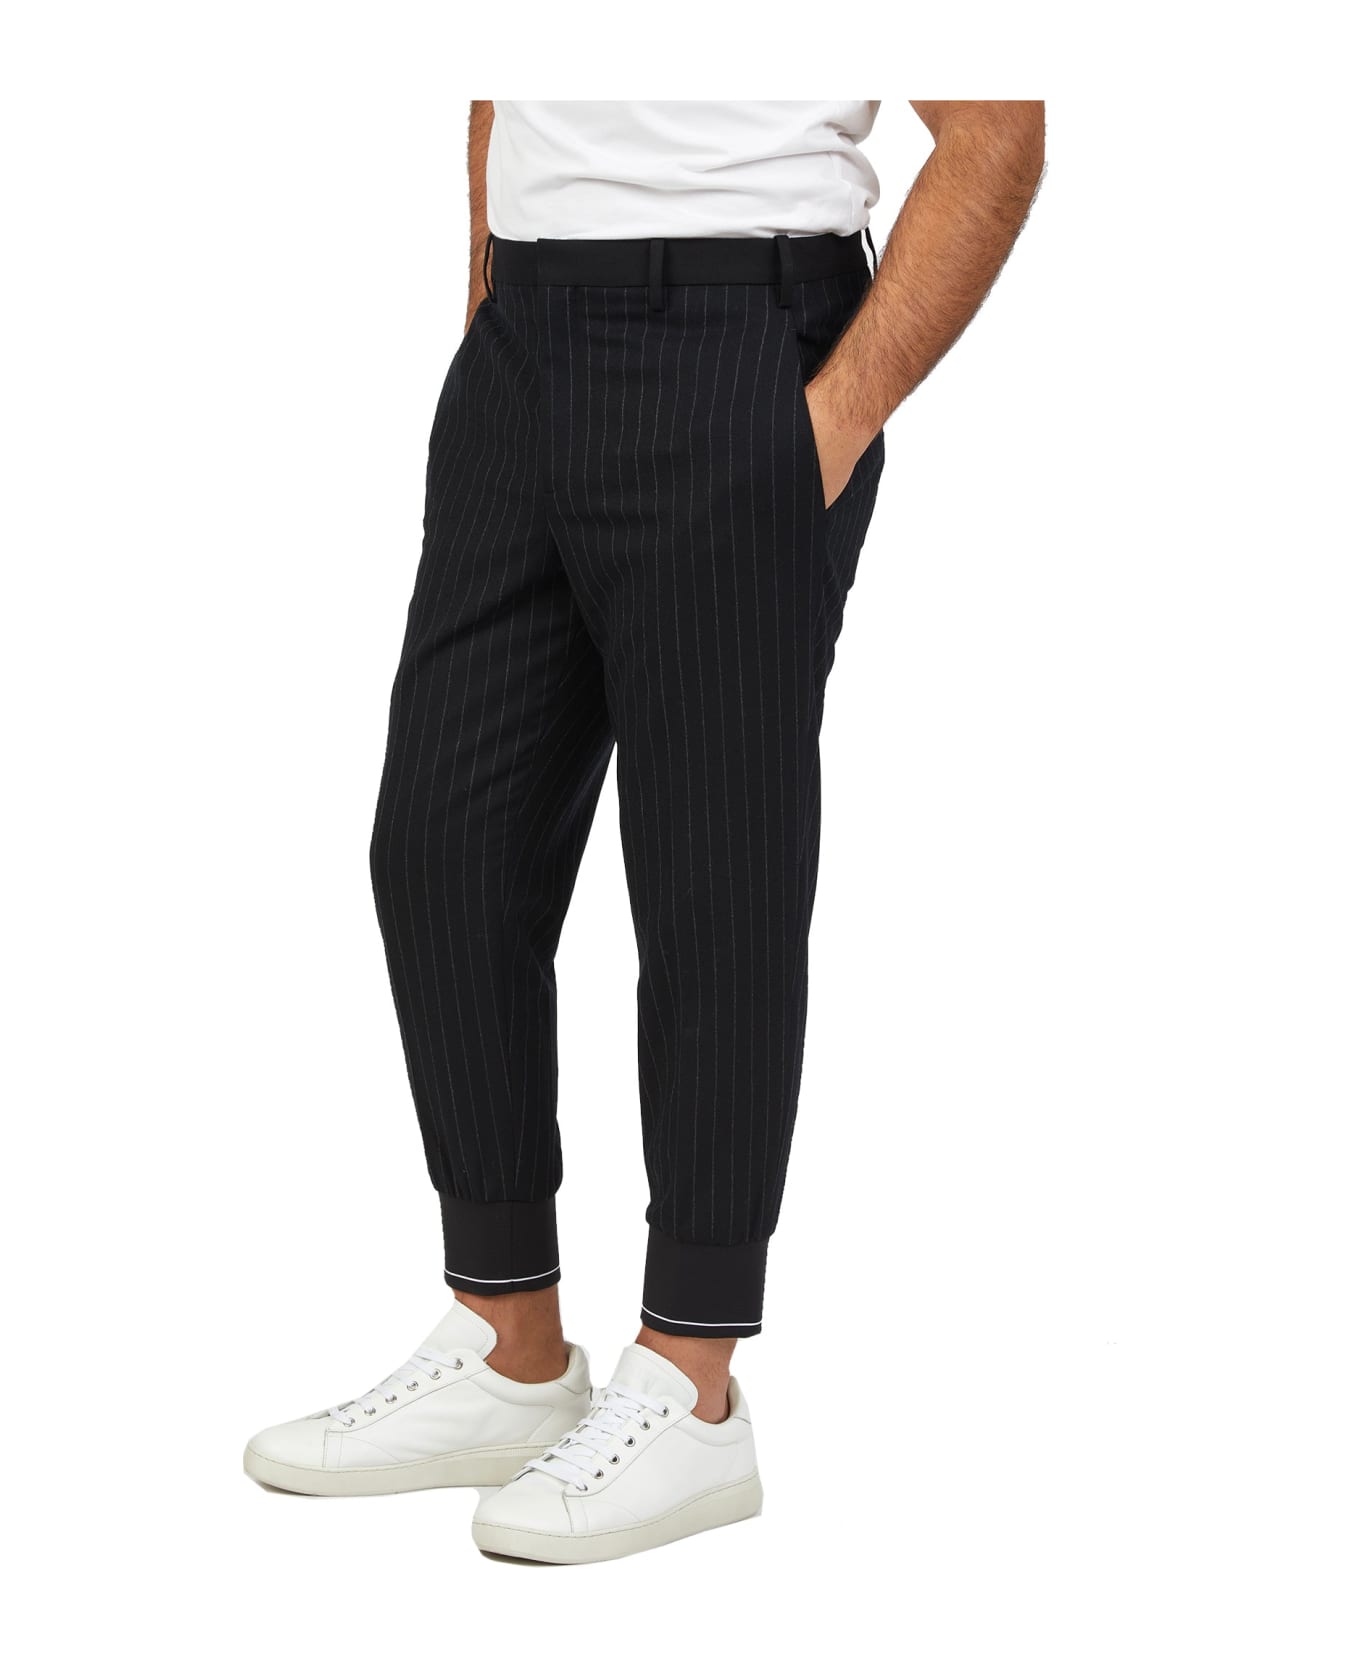 Neil Barrett Wool Striped Pants - Black